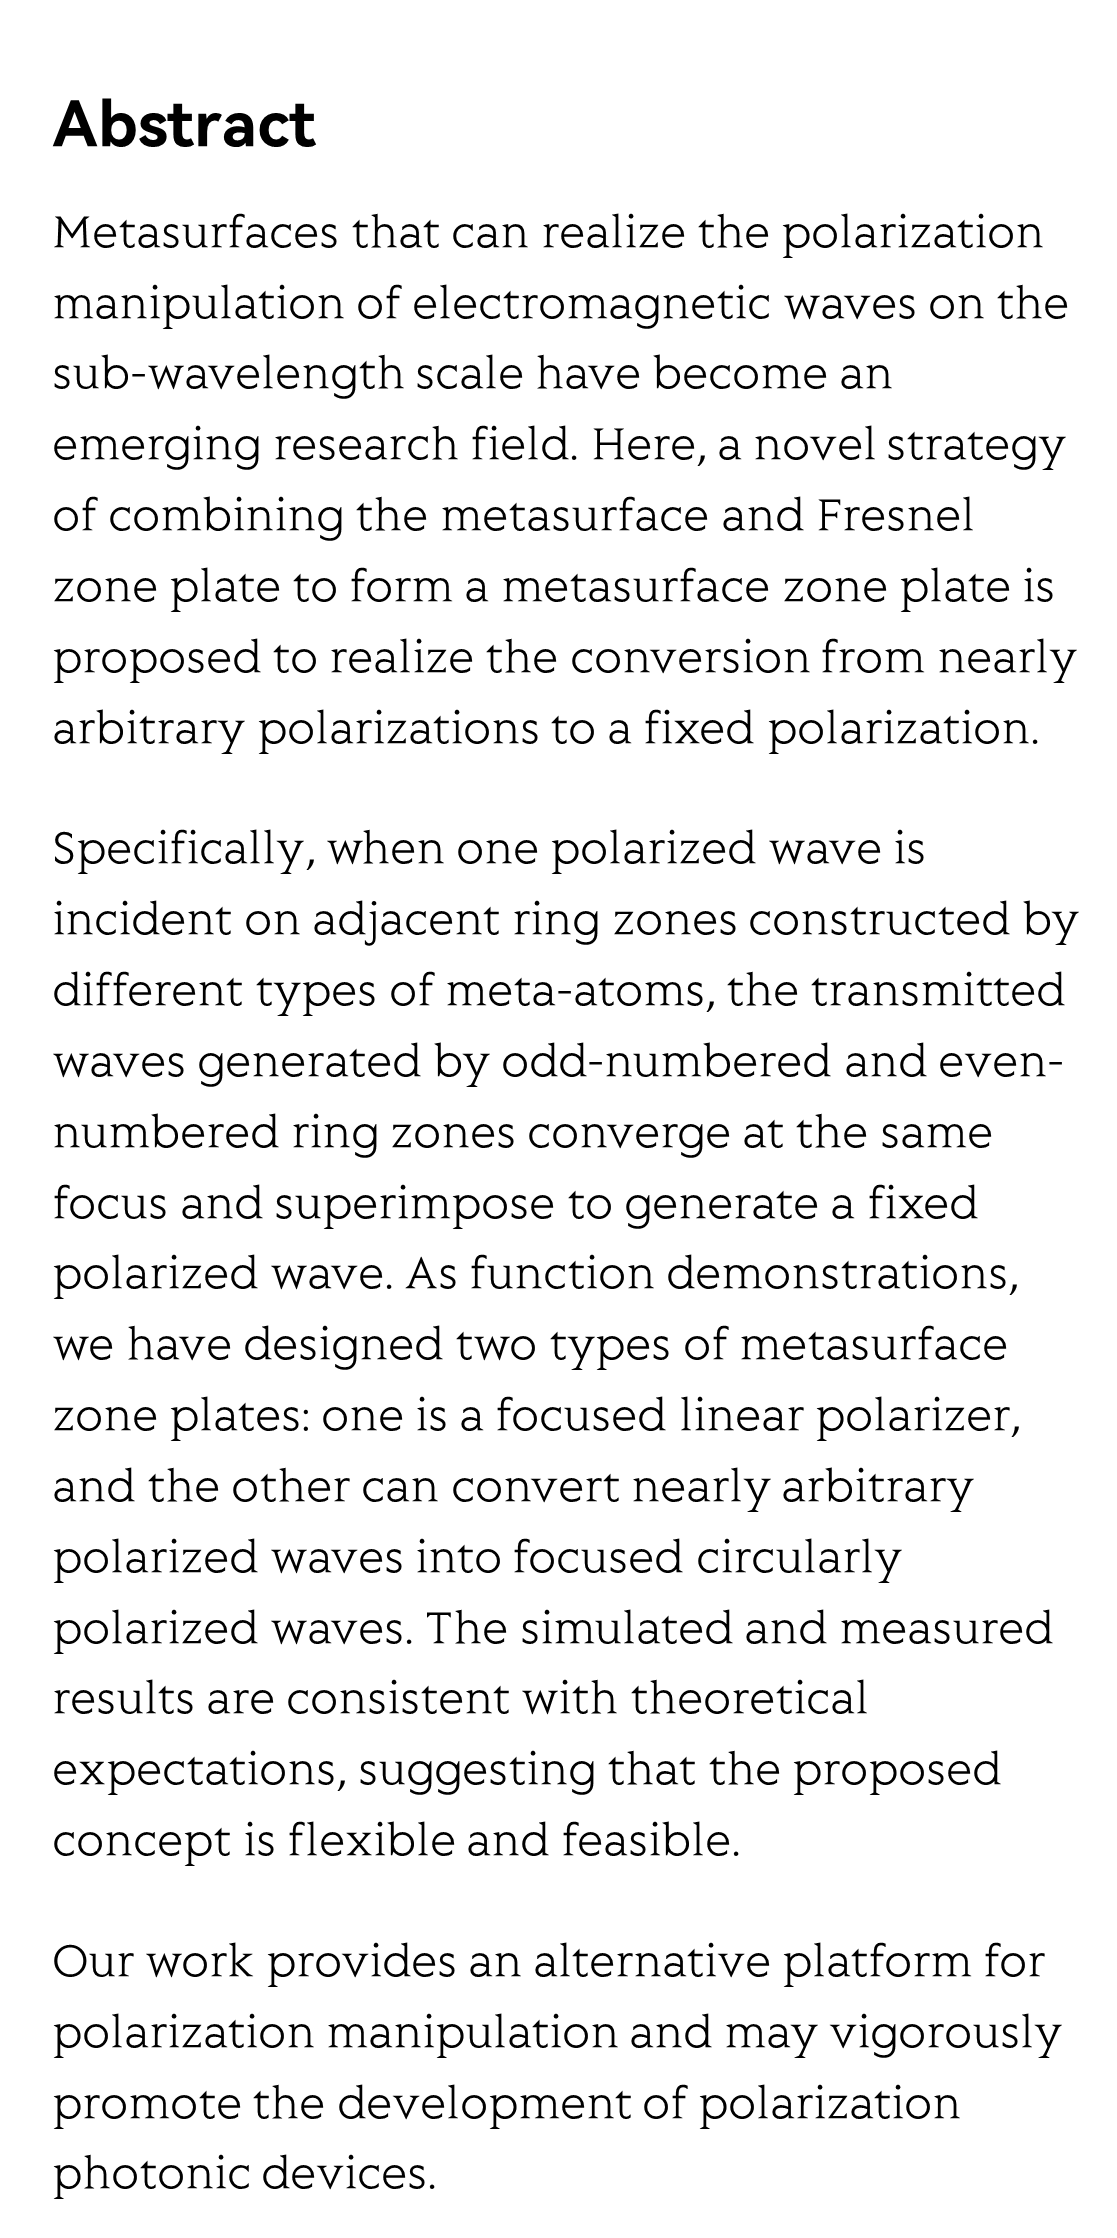 Terahertz metasurface zone plates with arbitrary polarizations to a fixed polarization conversion_2